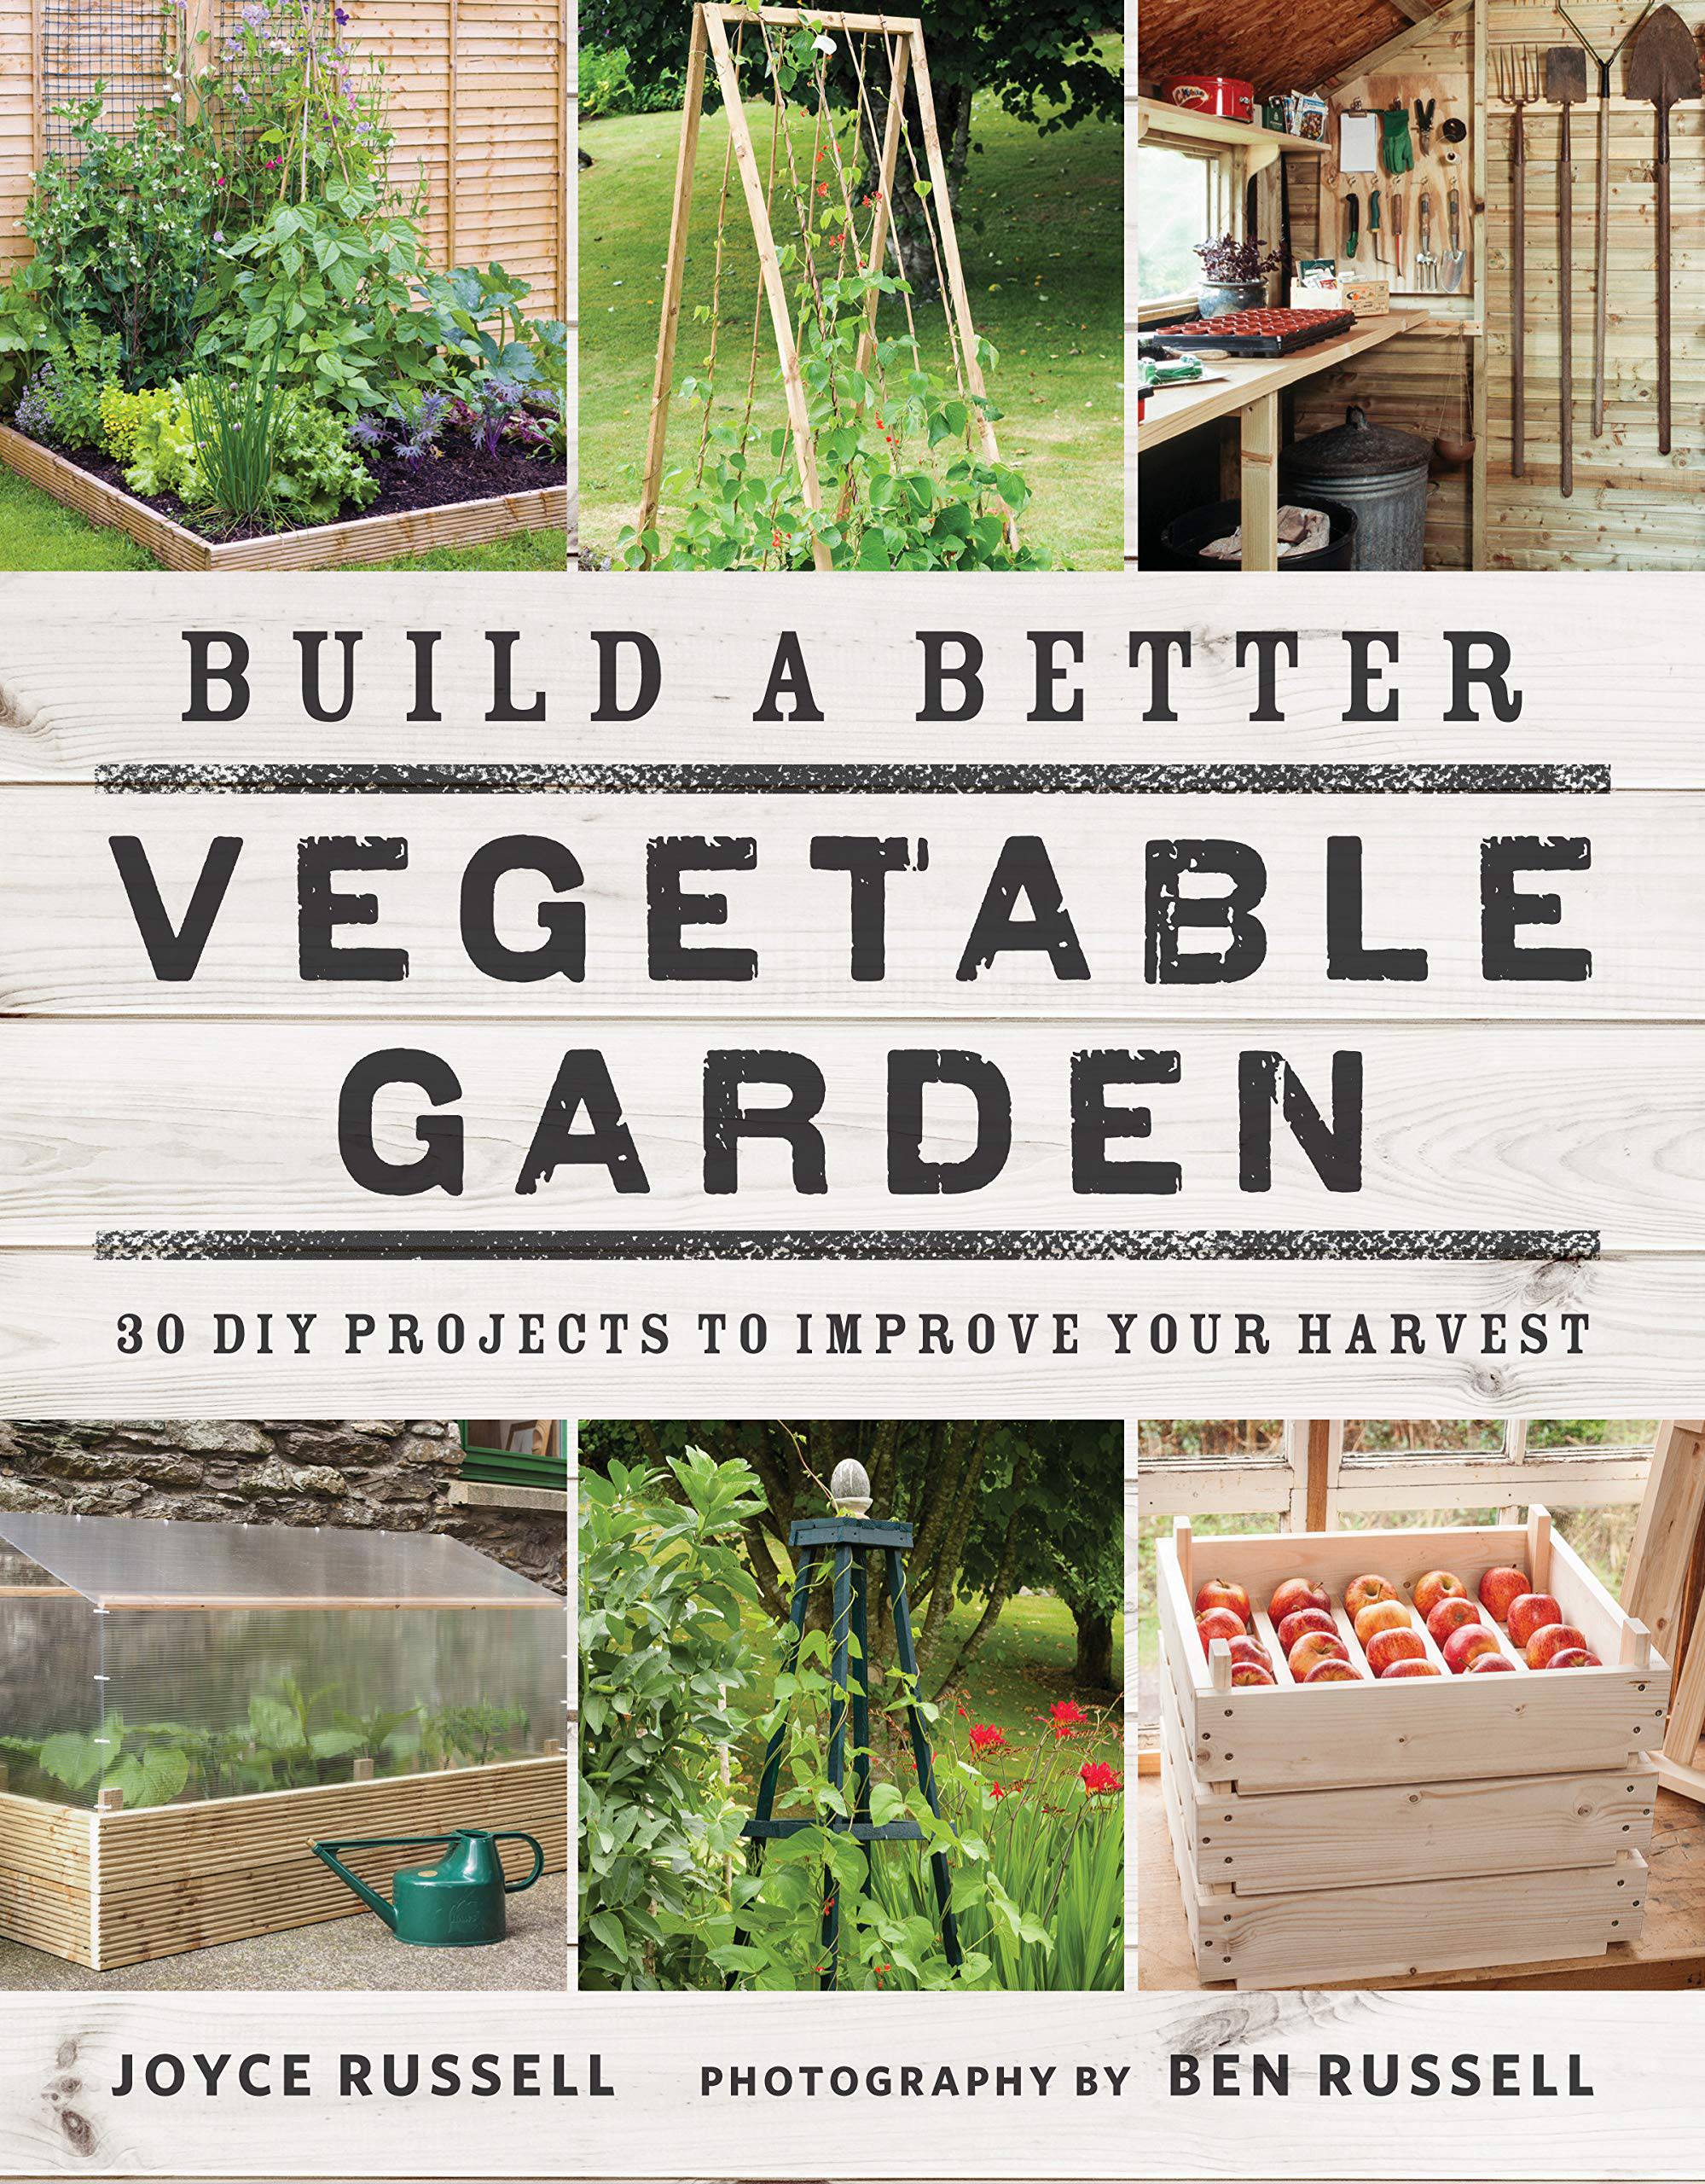 Build a better vegetable garden by Joyce Russell & Ben Russell